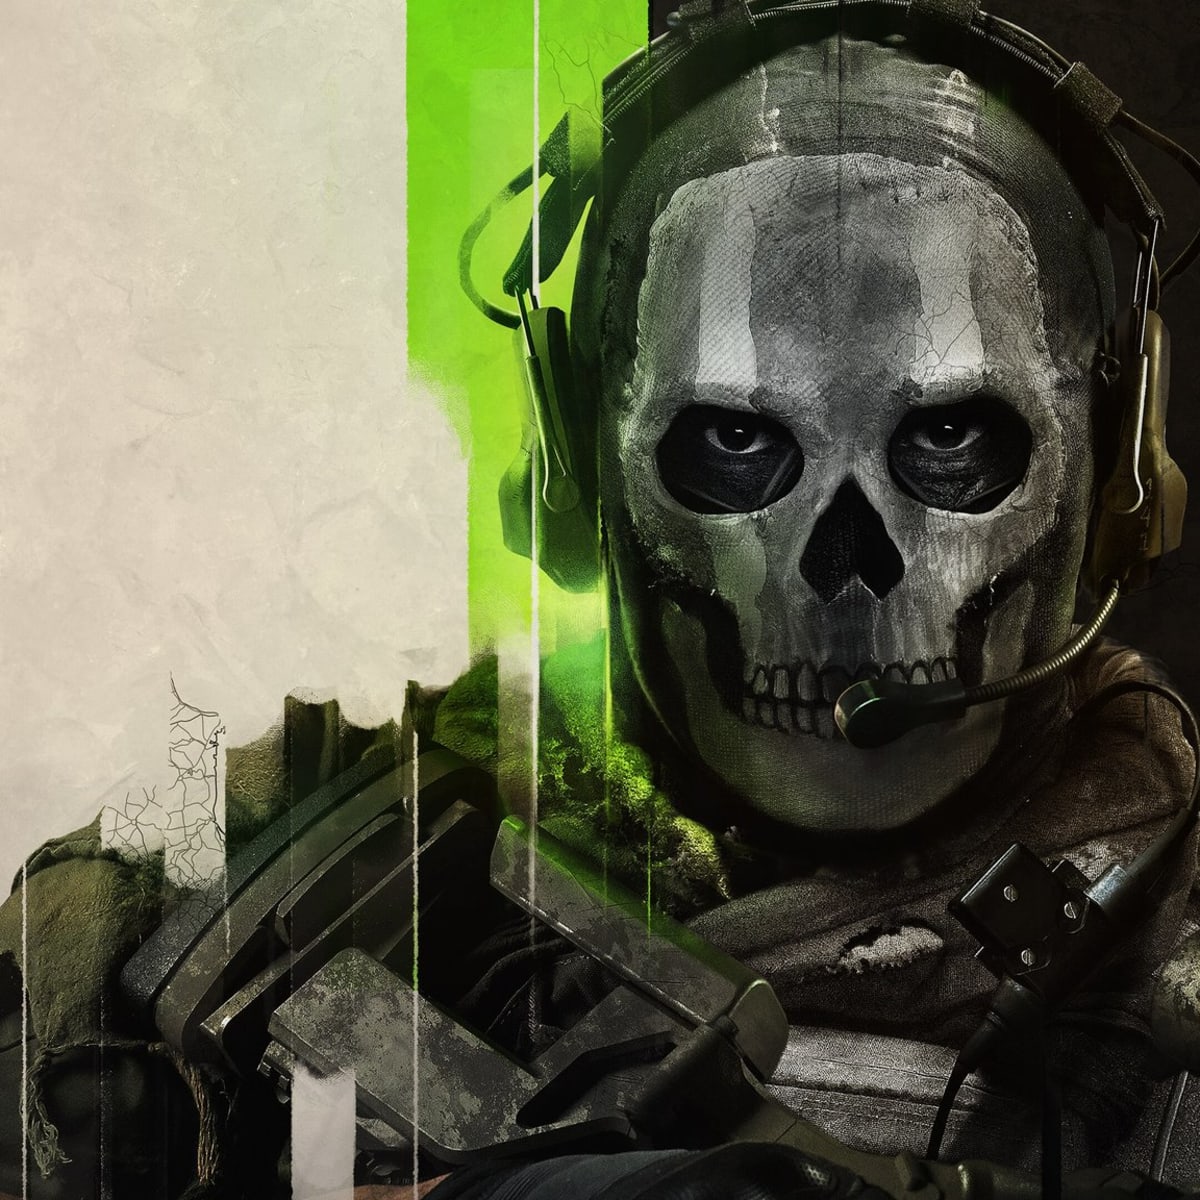 Modern Warfare 2 Ghost Masks - IGN